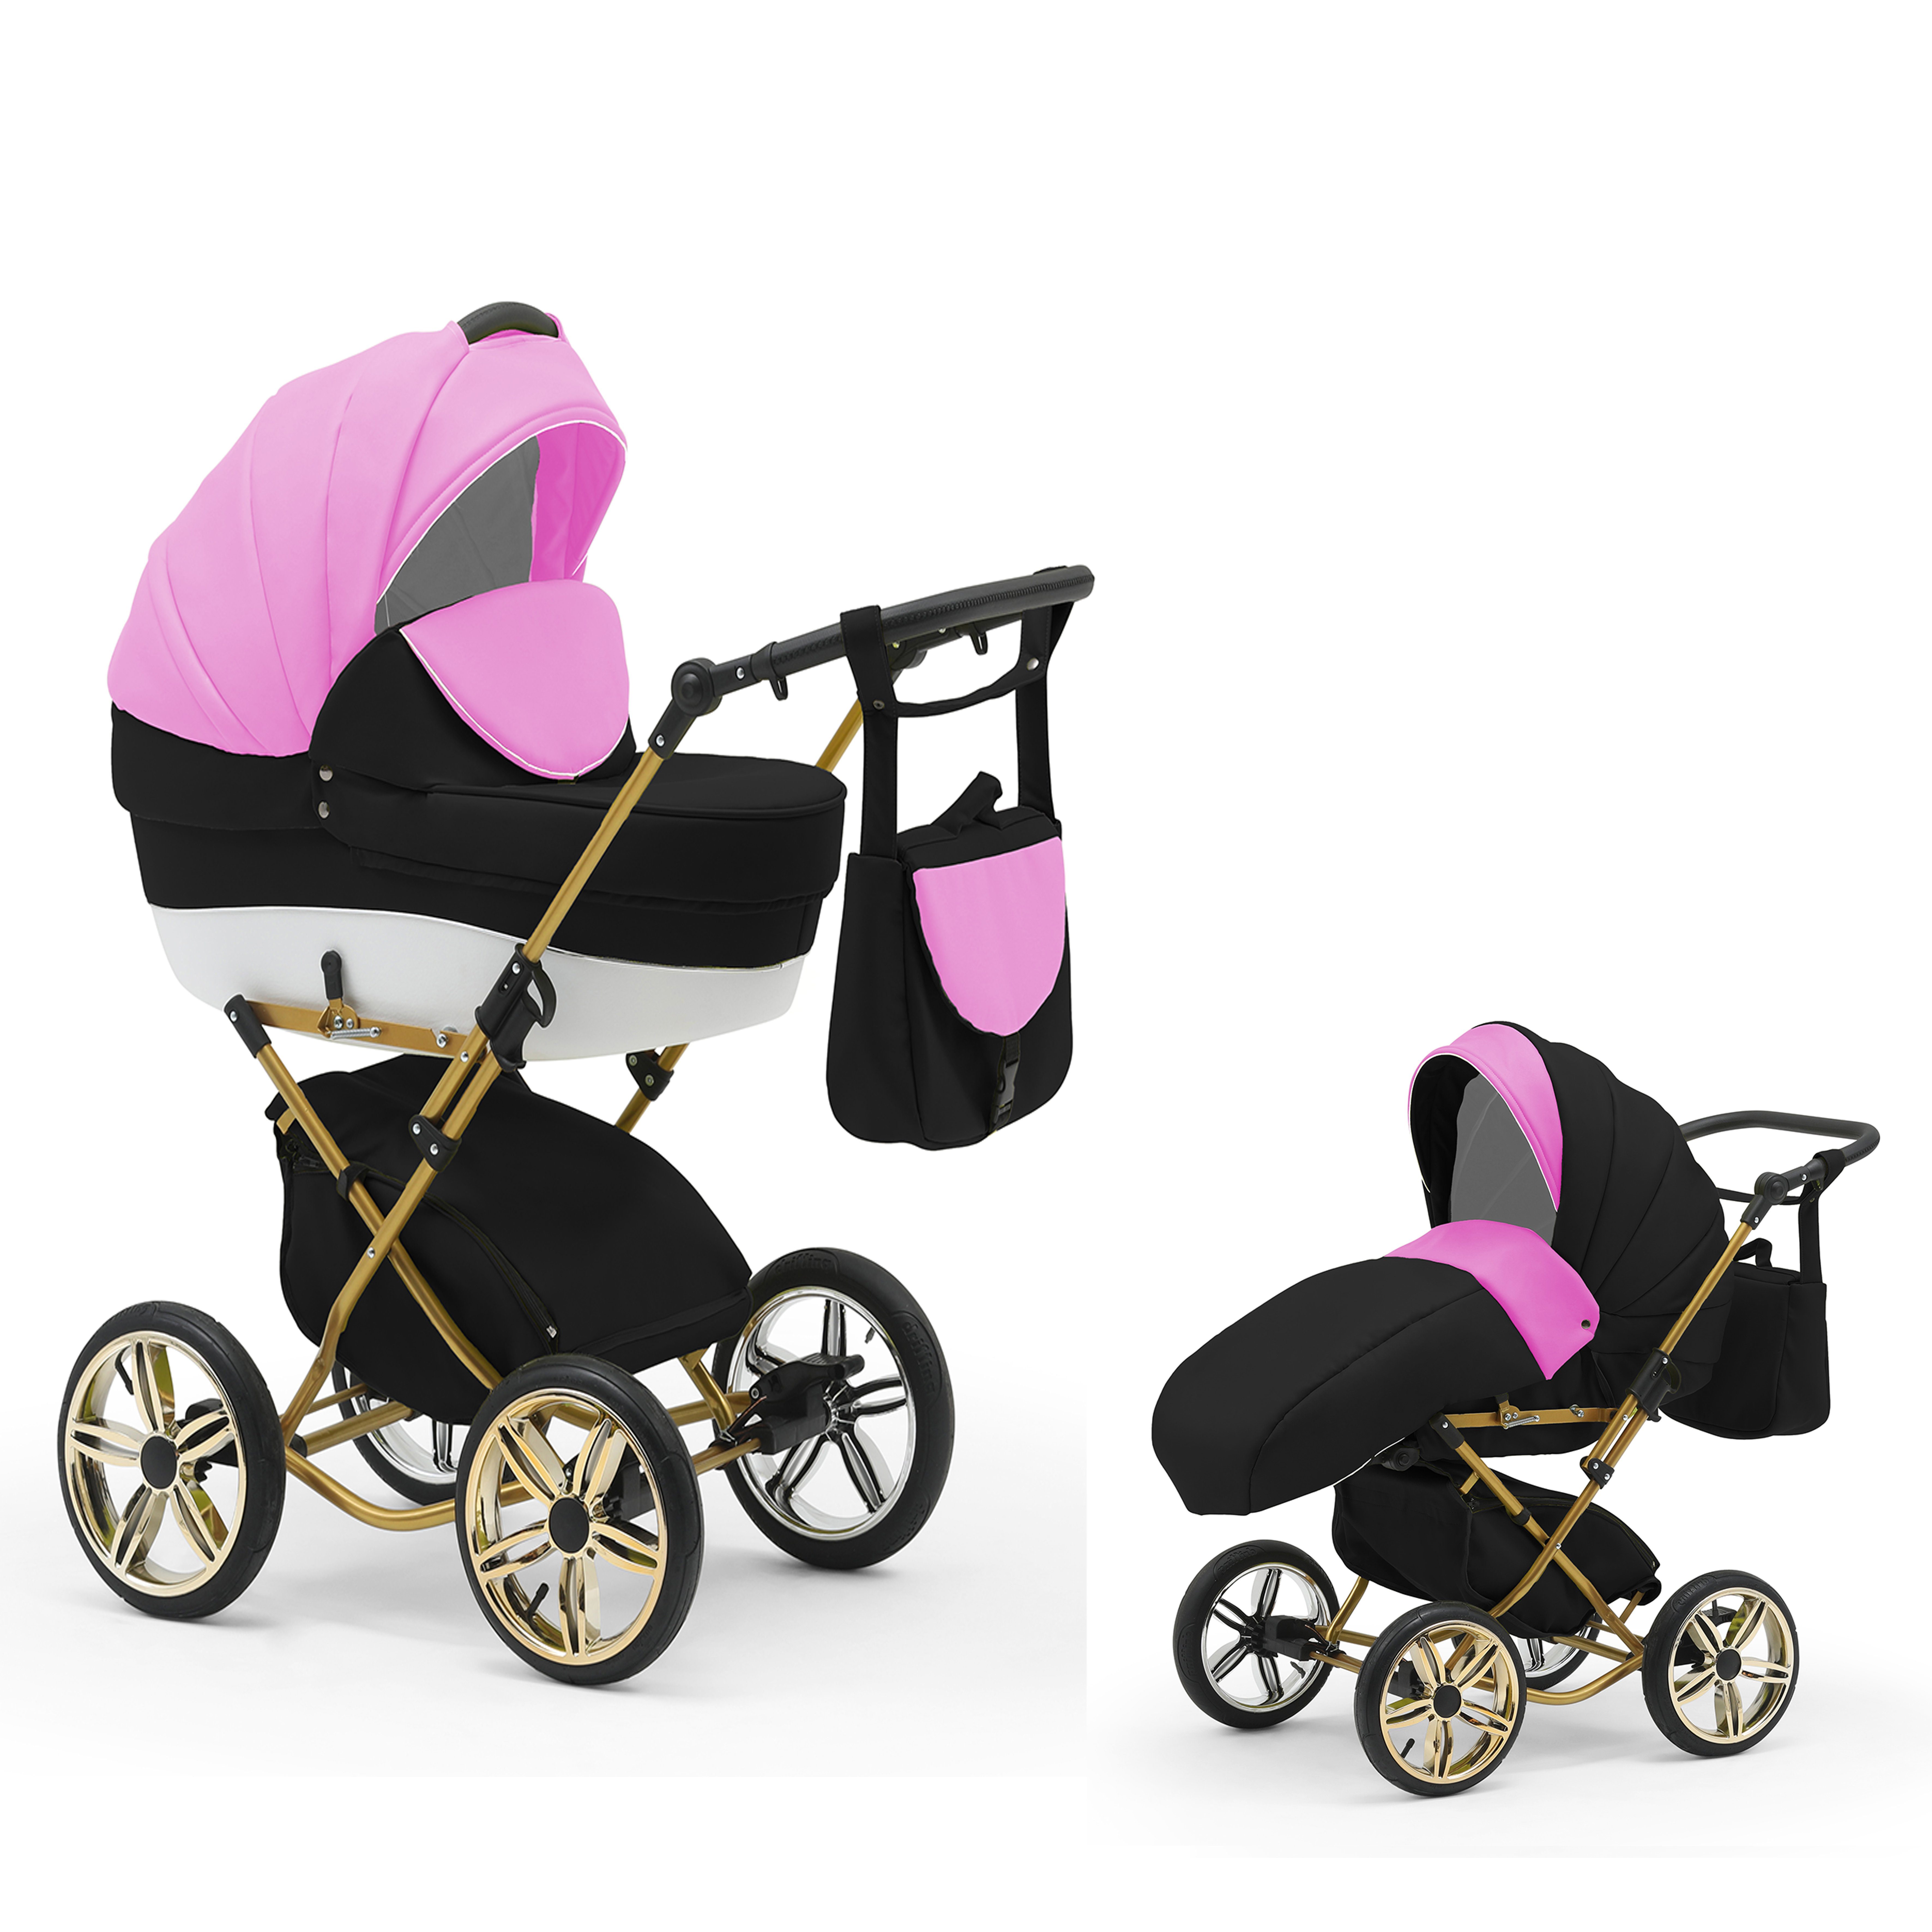 babies-on-wheels Kombi-Kinderwagen Sorento 2 in 1 - 11 Teile - von Geburt bis 4 Jahre in 30 Designs Pink-Weiß-Schwarz